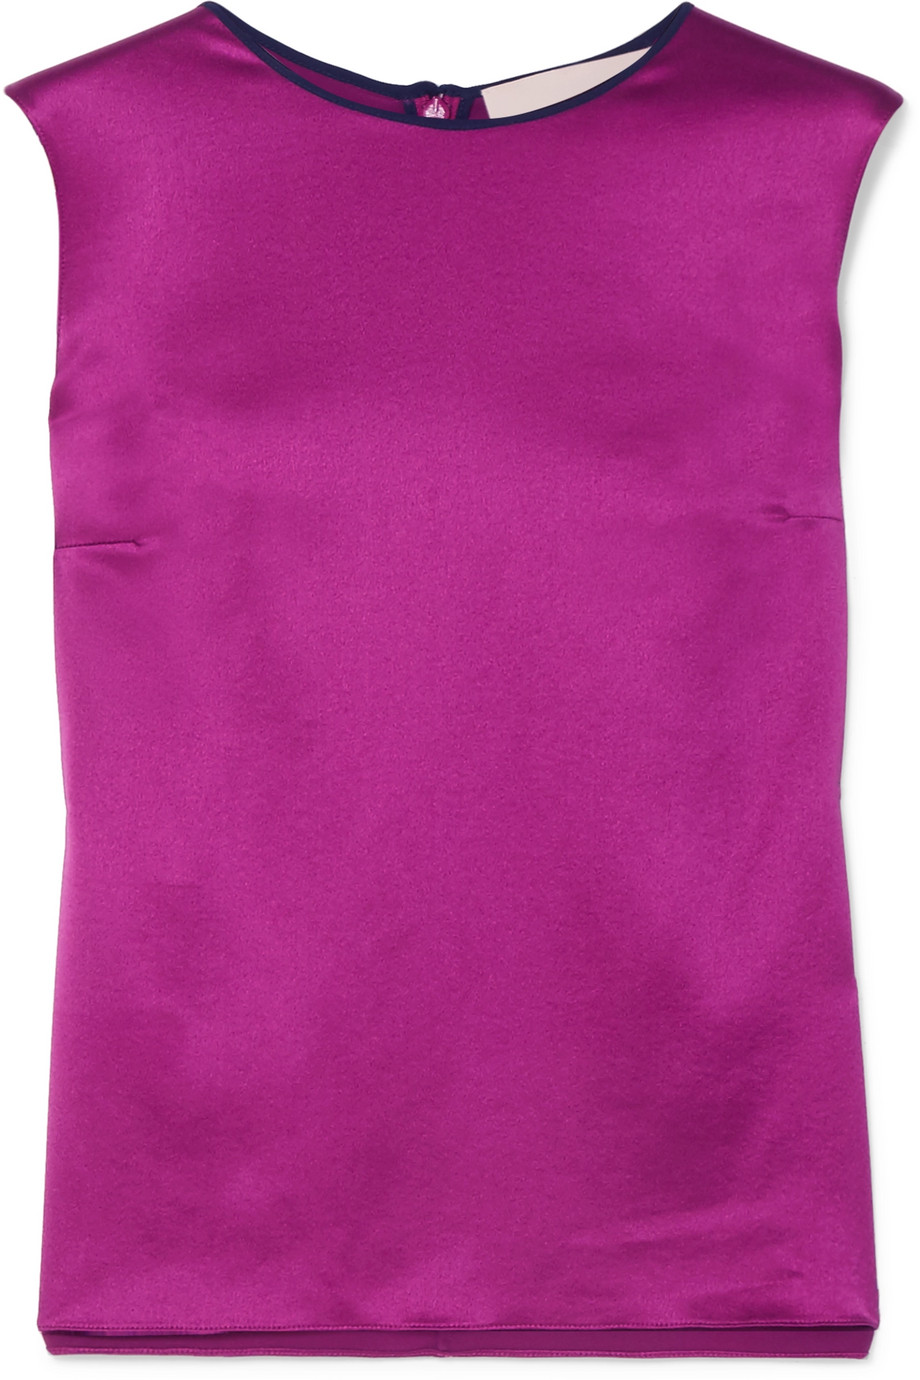 Роксанда известен своими роскошными тона и мы любим пурпурный оттенок верши...